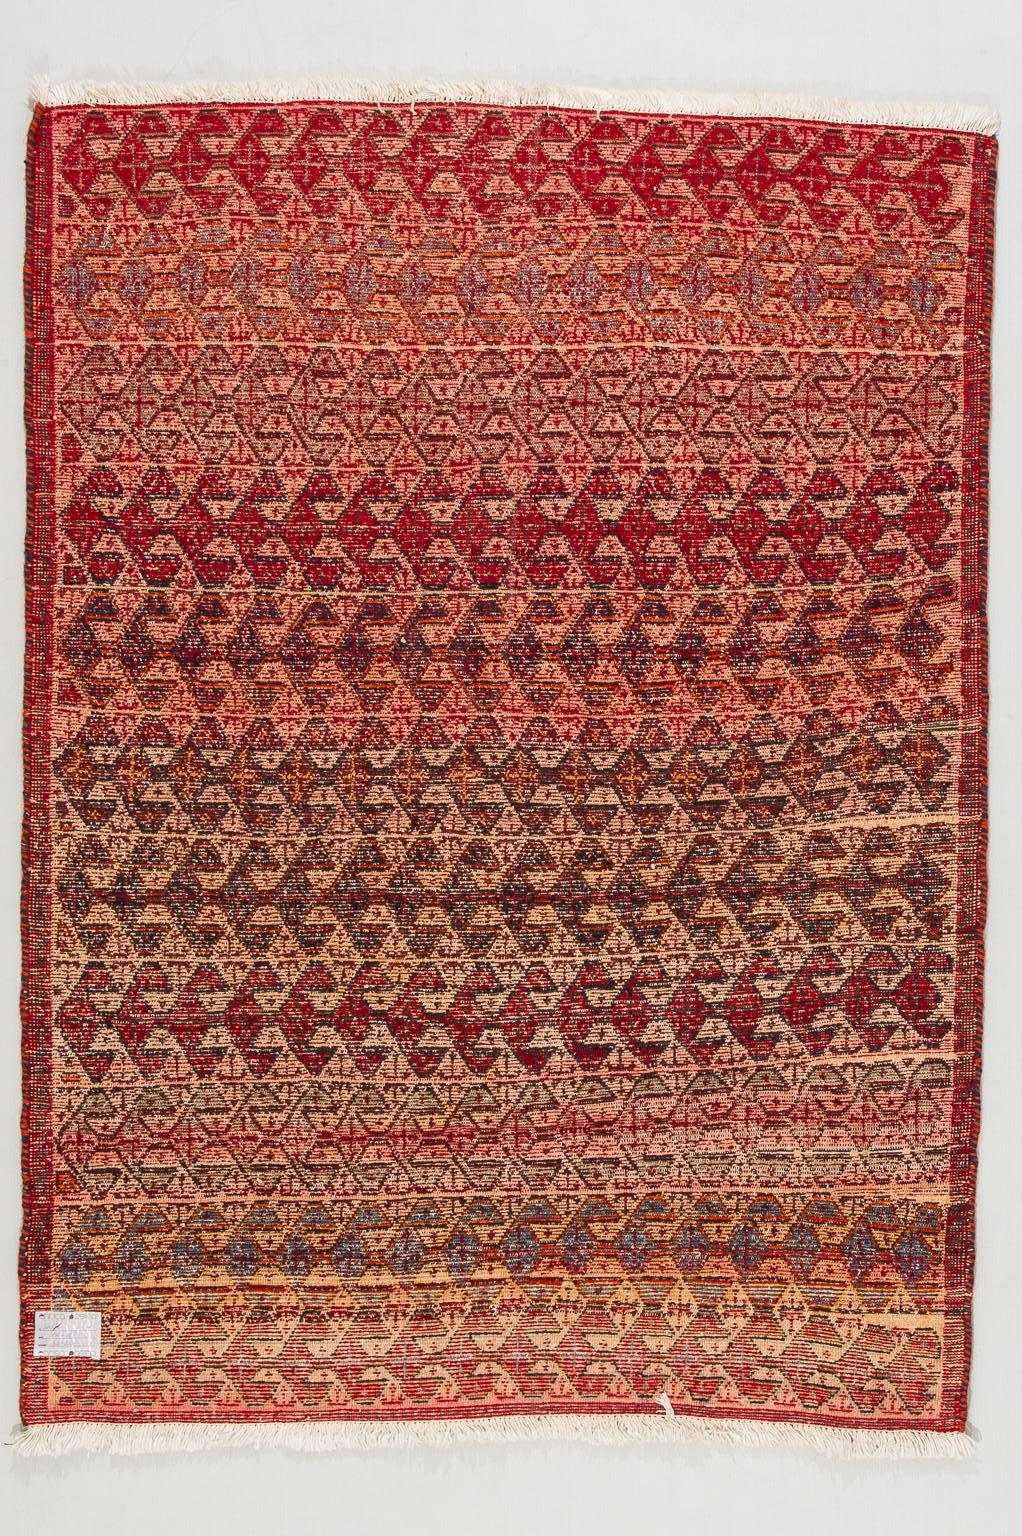 nr. 1275 -  Angenehmer, farbenfroher kleiner Teppich aus den Bergen Kurdistans, geknüpft von einer Frau in einem Dorf.
Die Wolle ist weich und lädt dazu ein, auf dem Teppich zu sitzen: Es ist ihr Sofa.
Es ist ein leicht einstellbares Maß mit einem